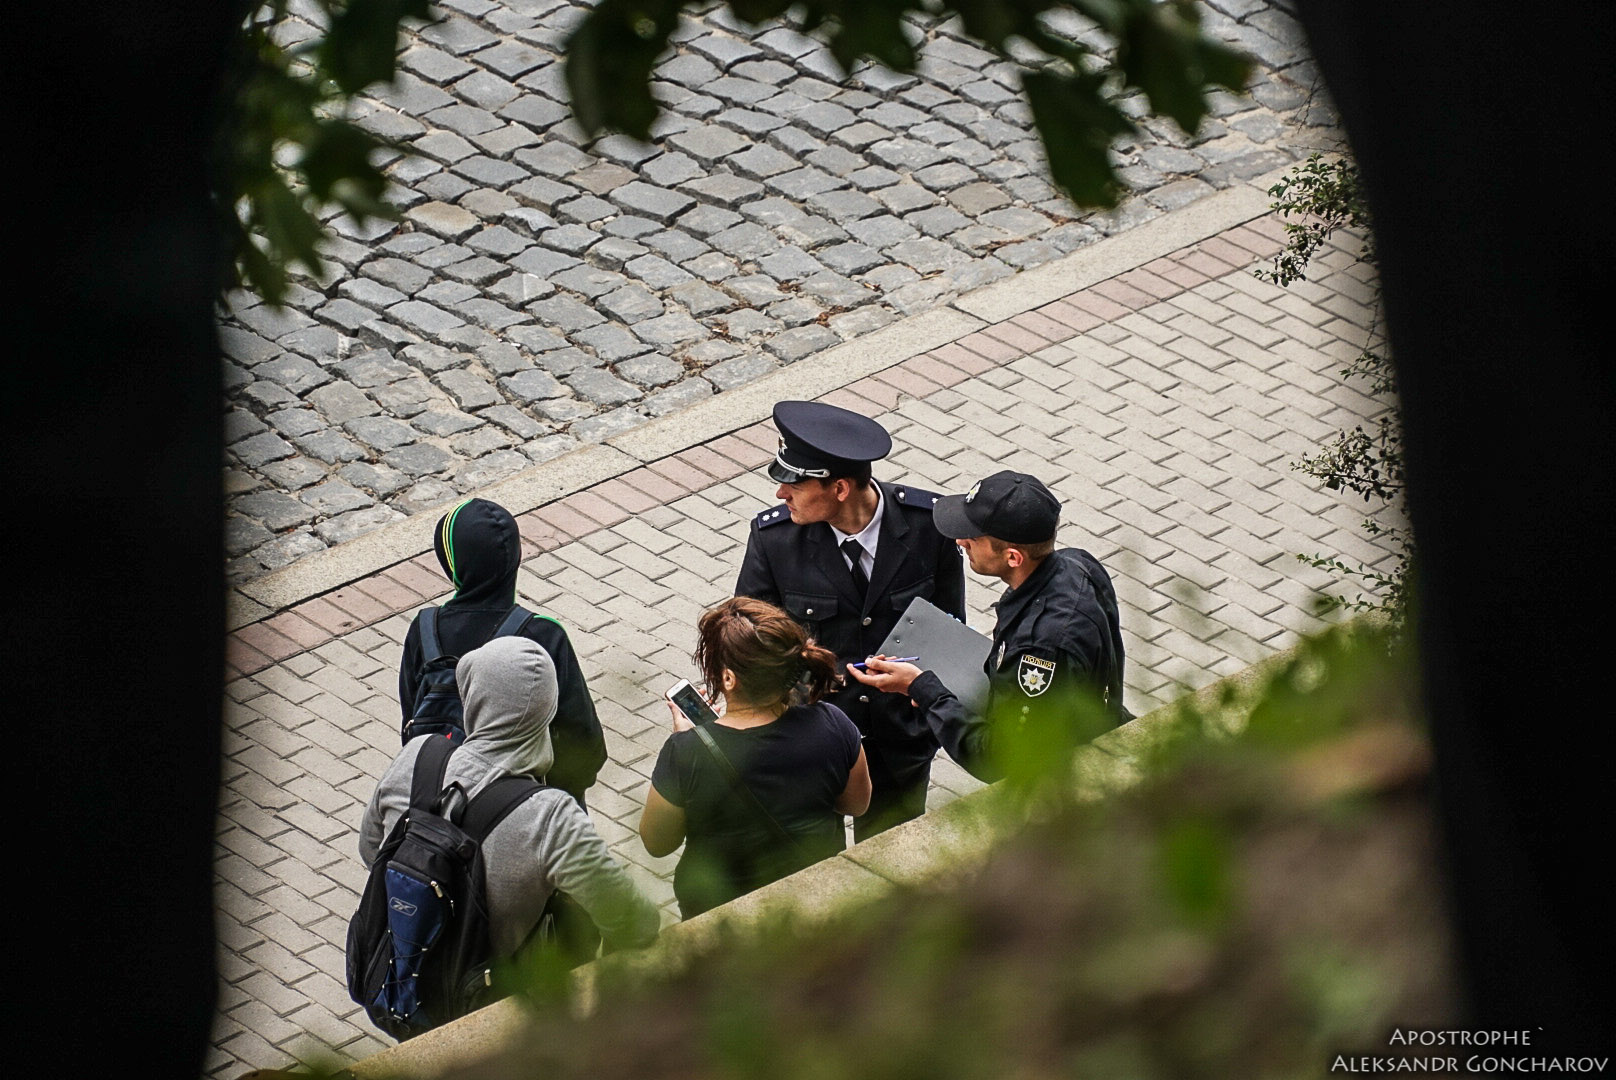 Стало известно, в кого пытались попасть неизвестные взрывпакетом на улице Грушевского: новые свидетельства очевидцев взрыва рядом с Кабмином и кадры с пострадавшими